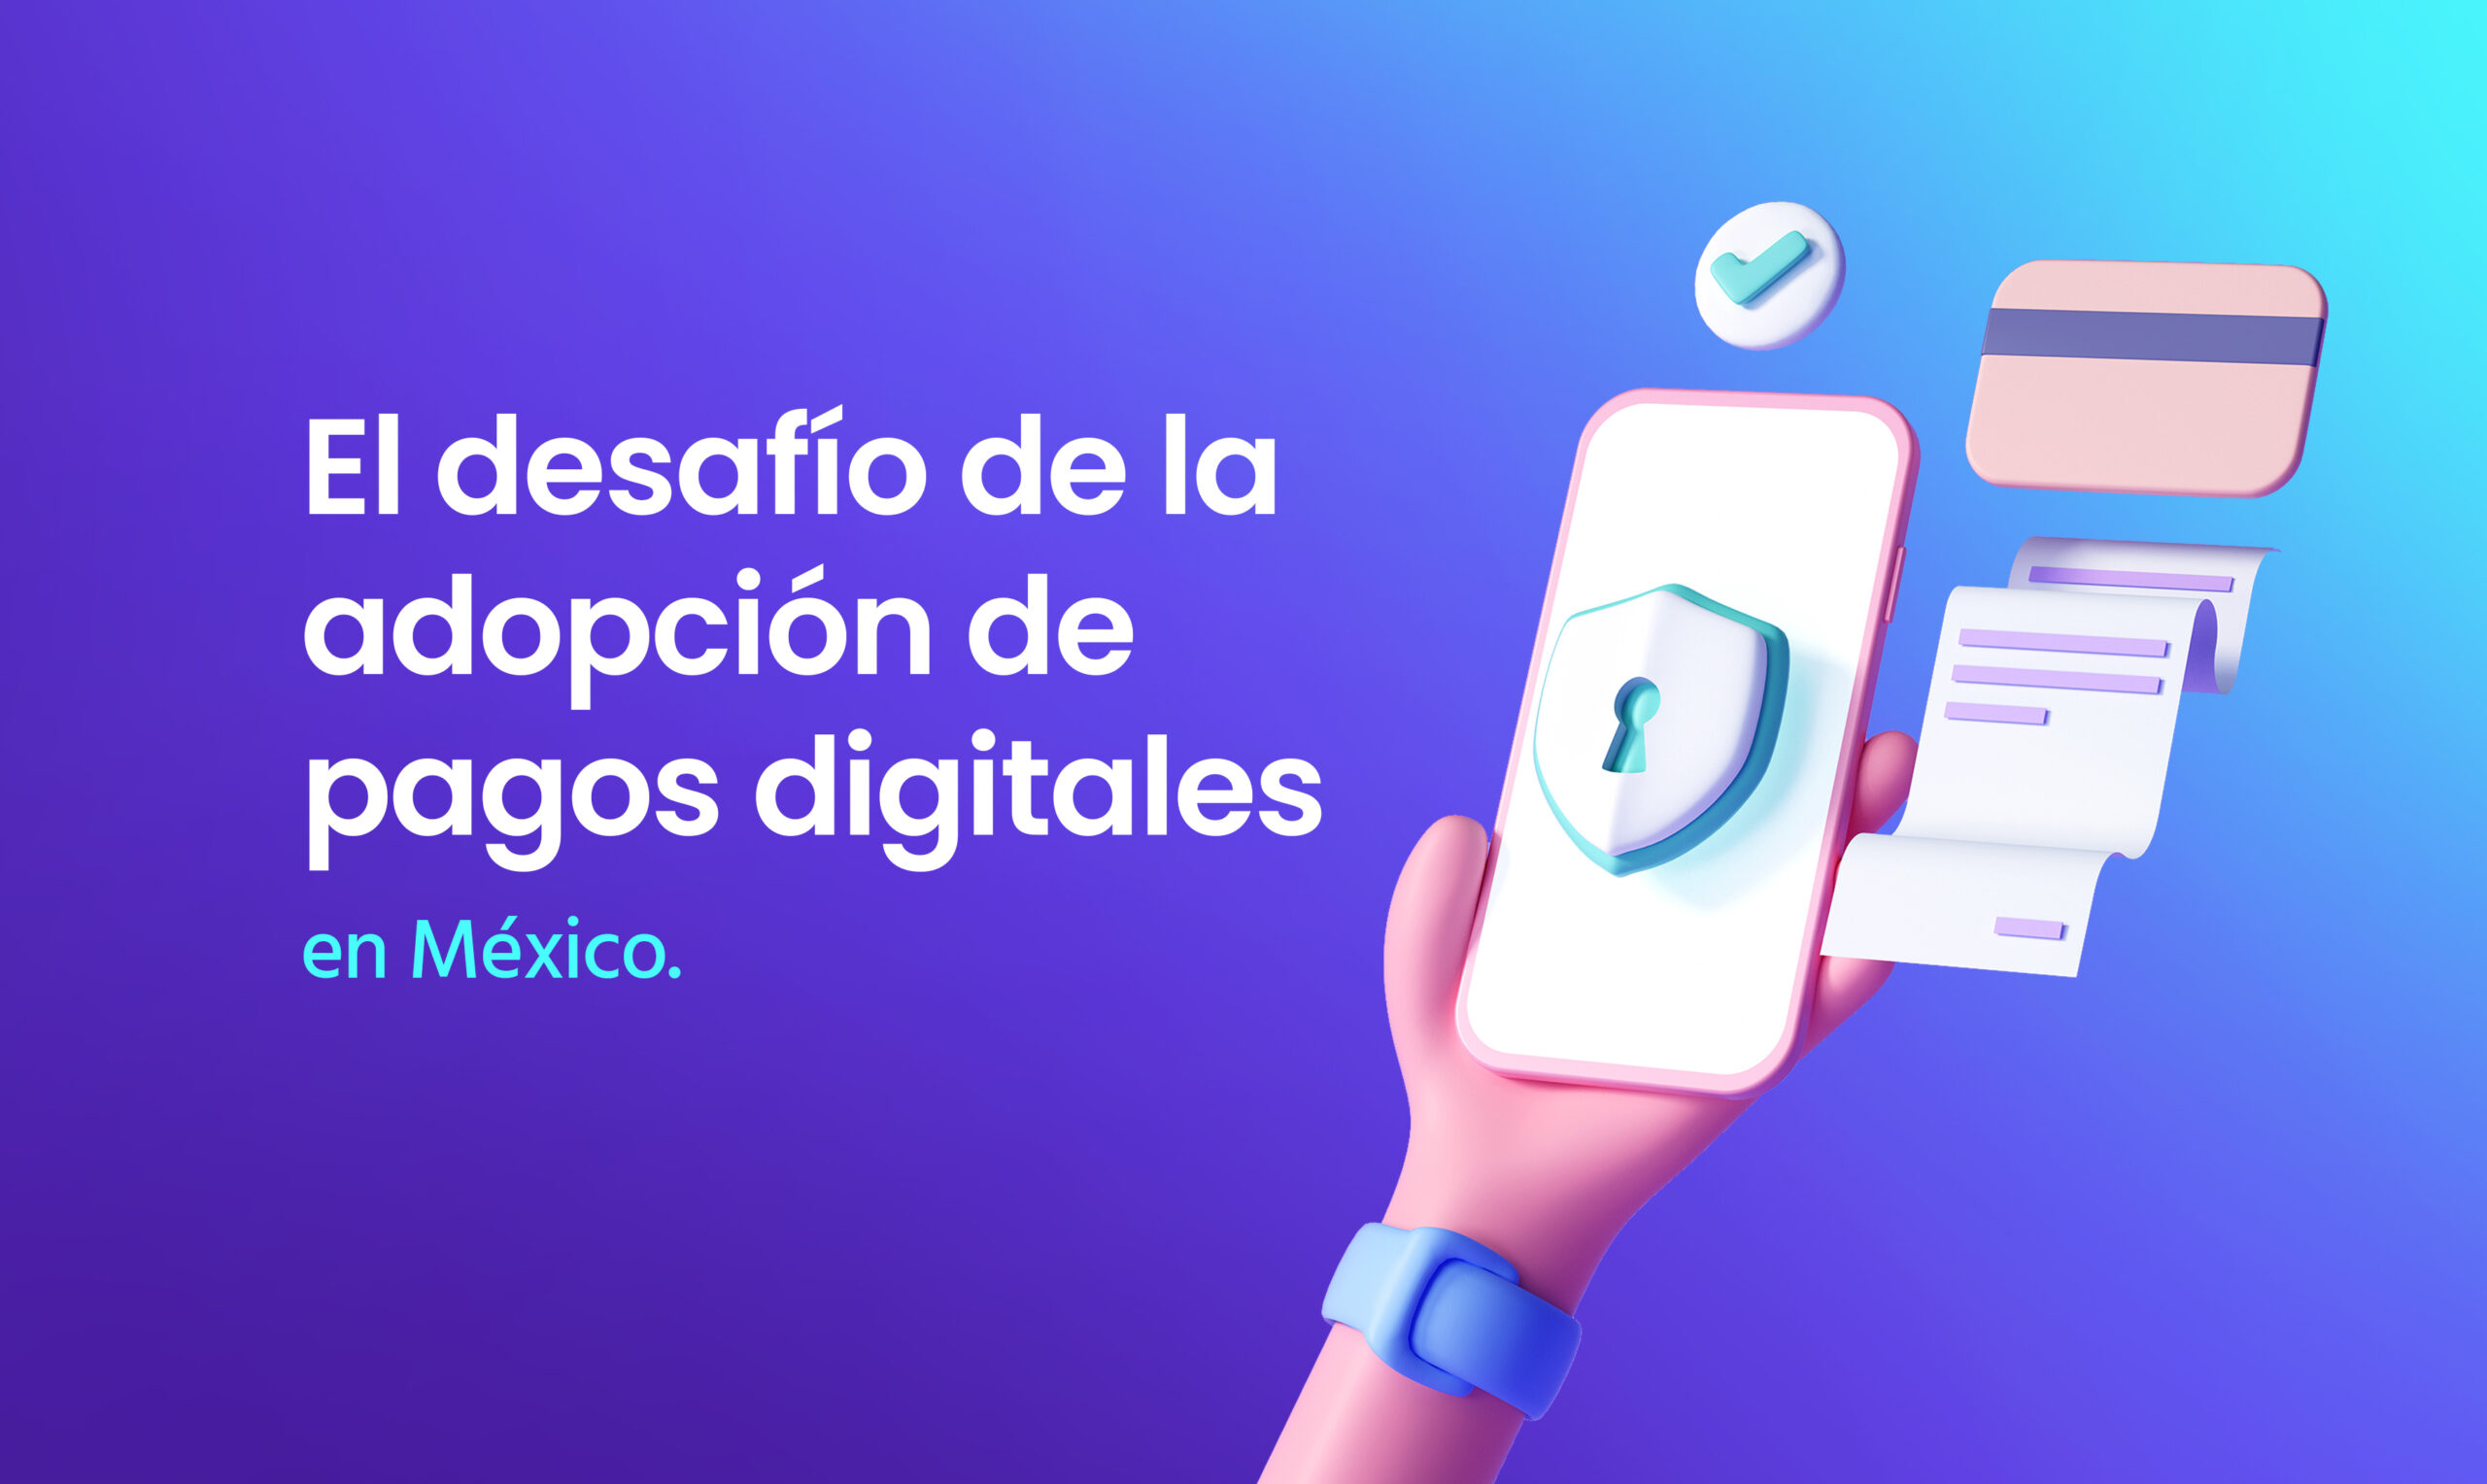 El desafío de la adopción de pagos digitales en México.